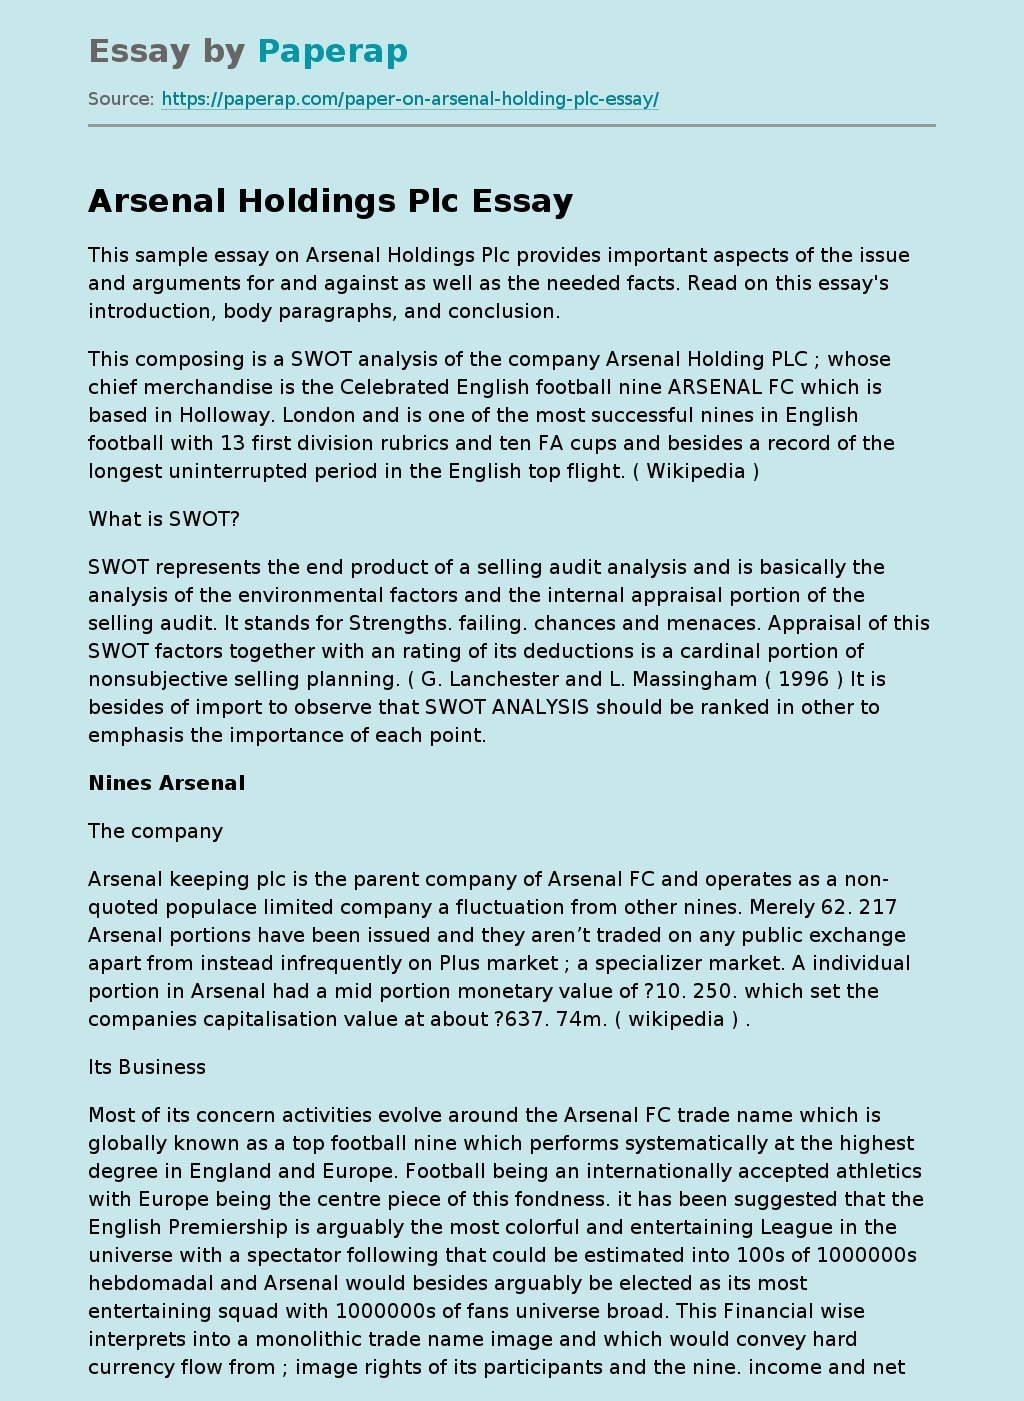 Sample Essay on Arsenal Holdings Plc